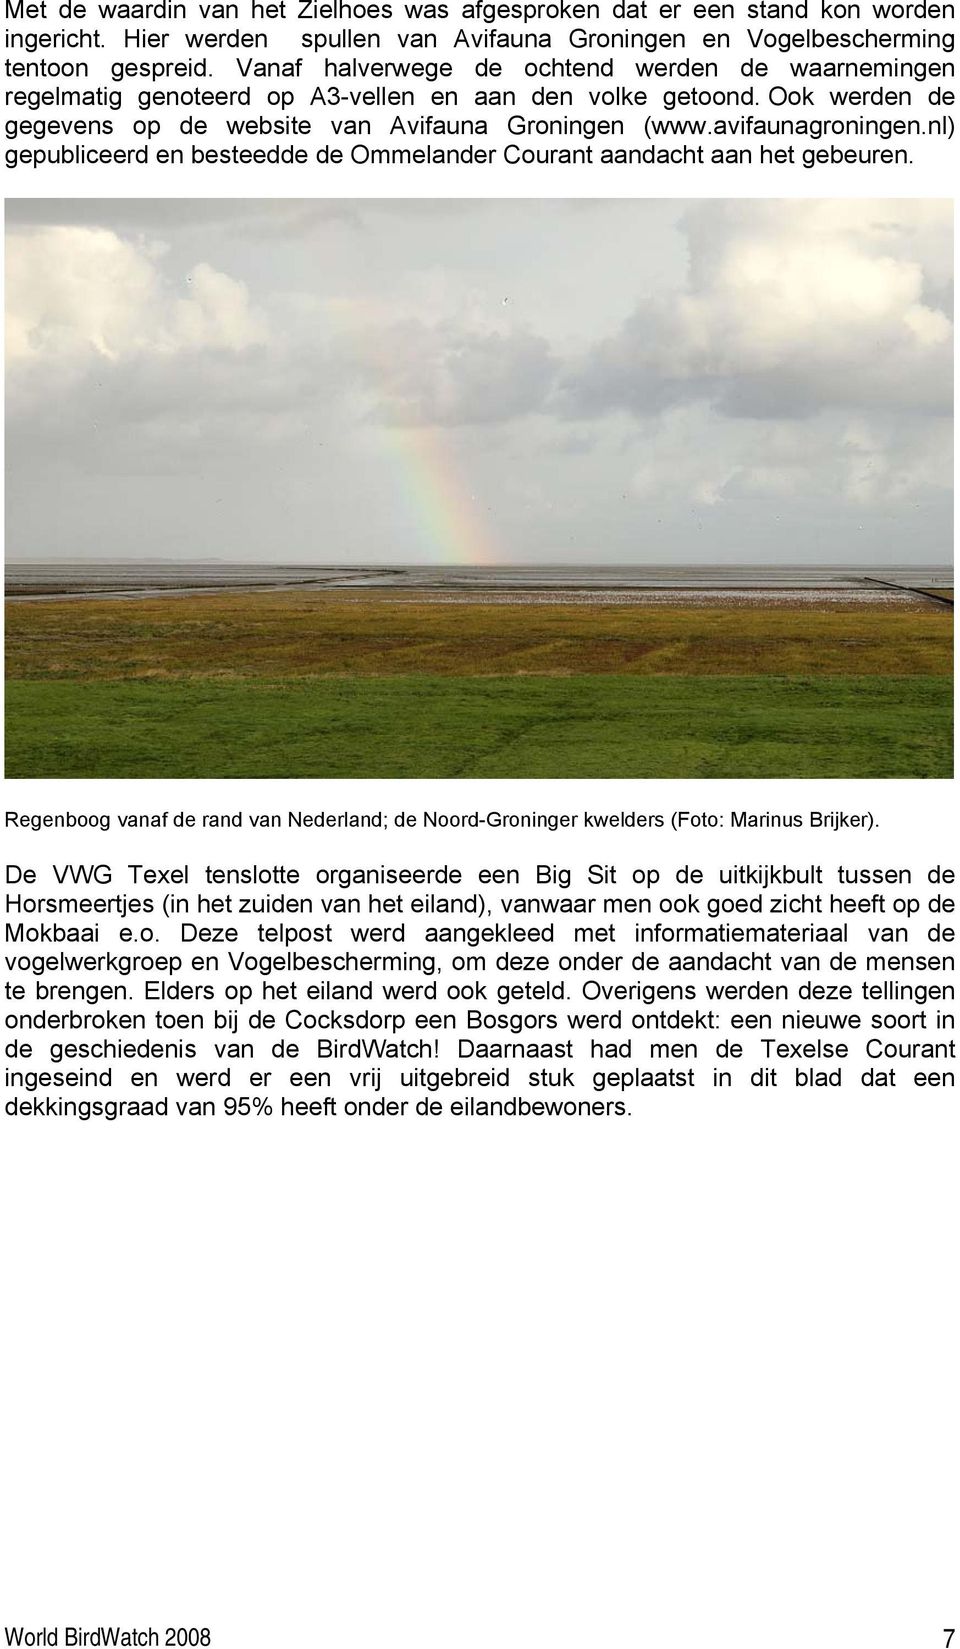 nl) gepubliceerd en besteedde de Ommelander Courant aandacht aan het gebeuren. Regenboog vanaf de rand van Nederland; de Noord-Groninger kwelders (Foto: Marinus Brijker).